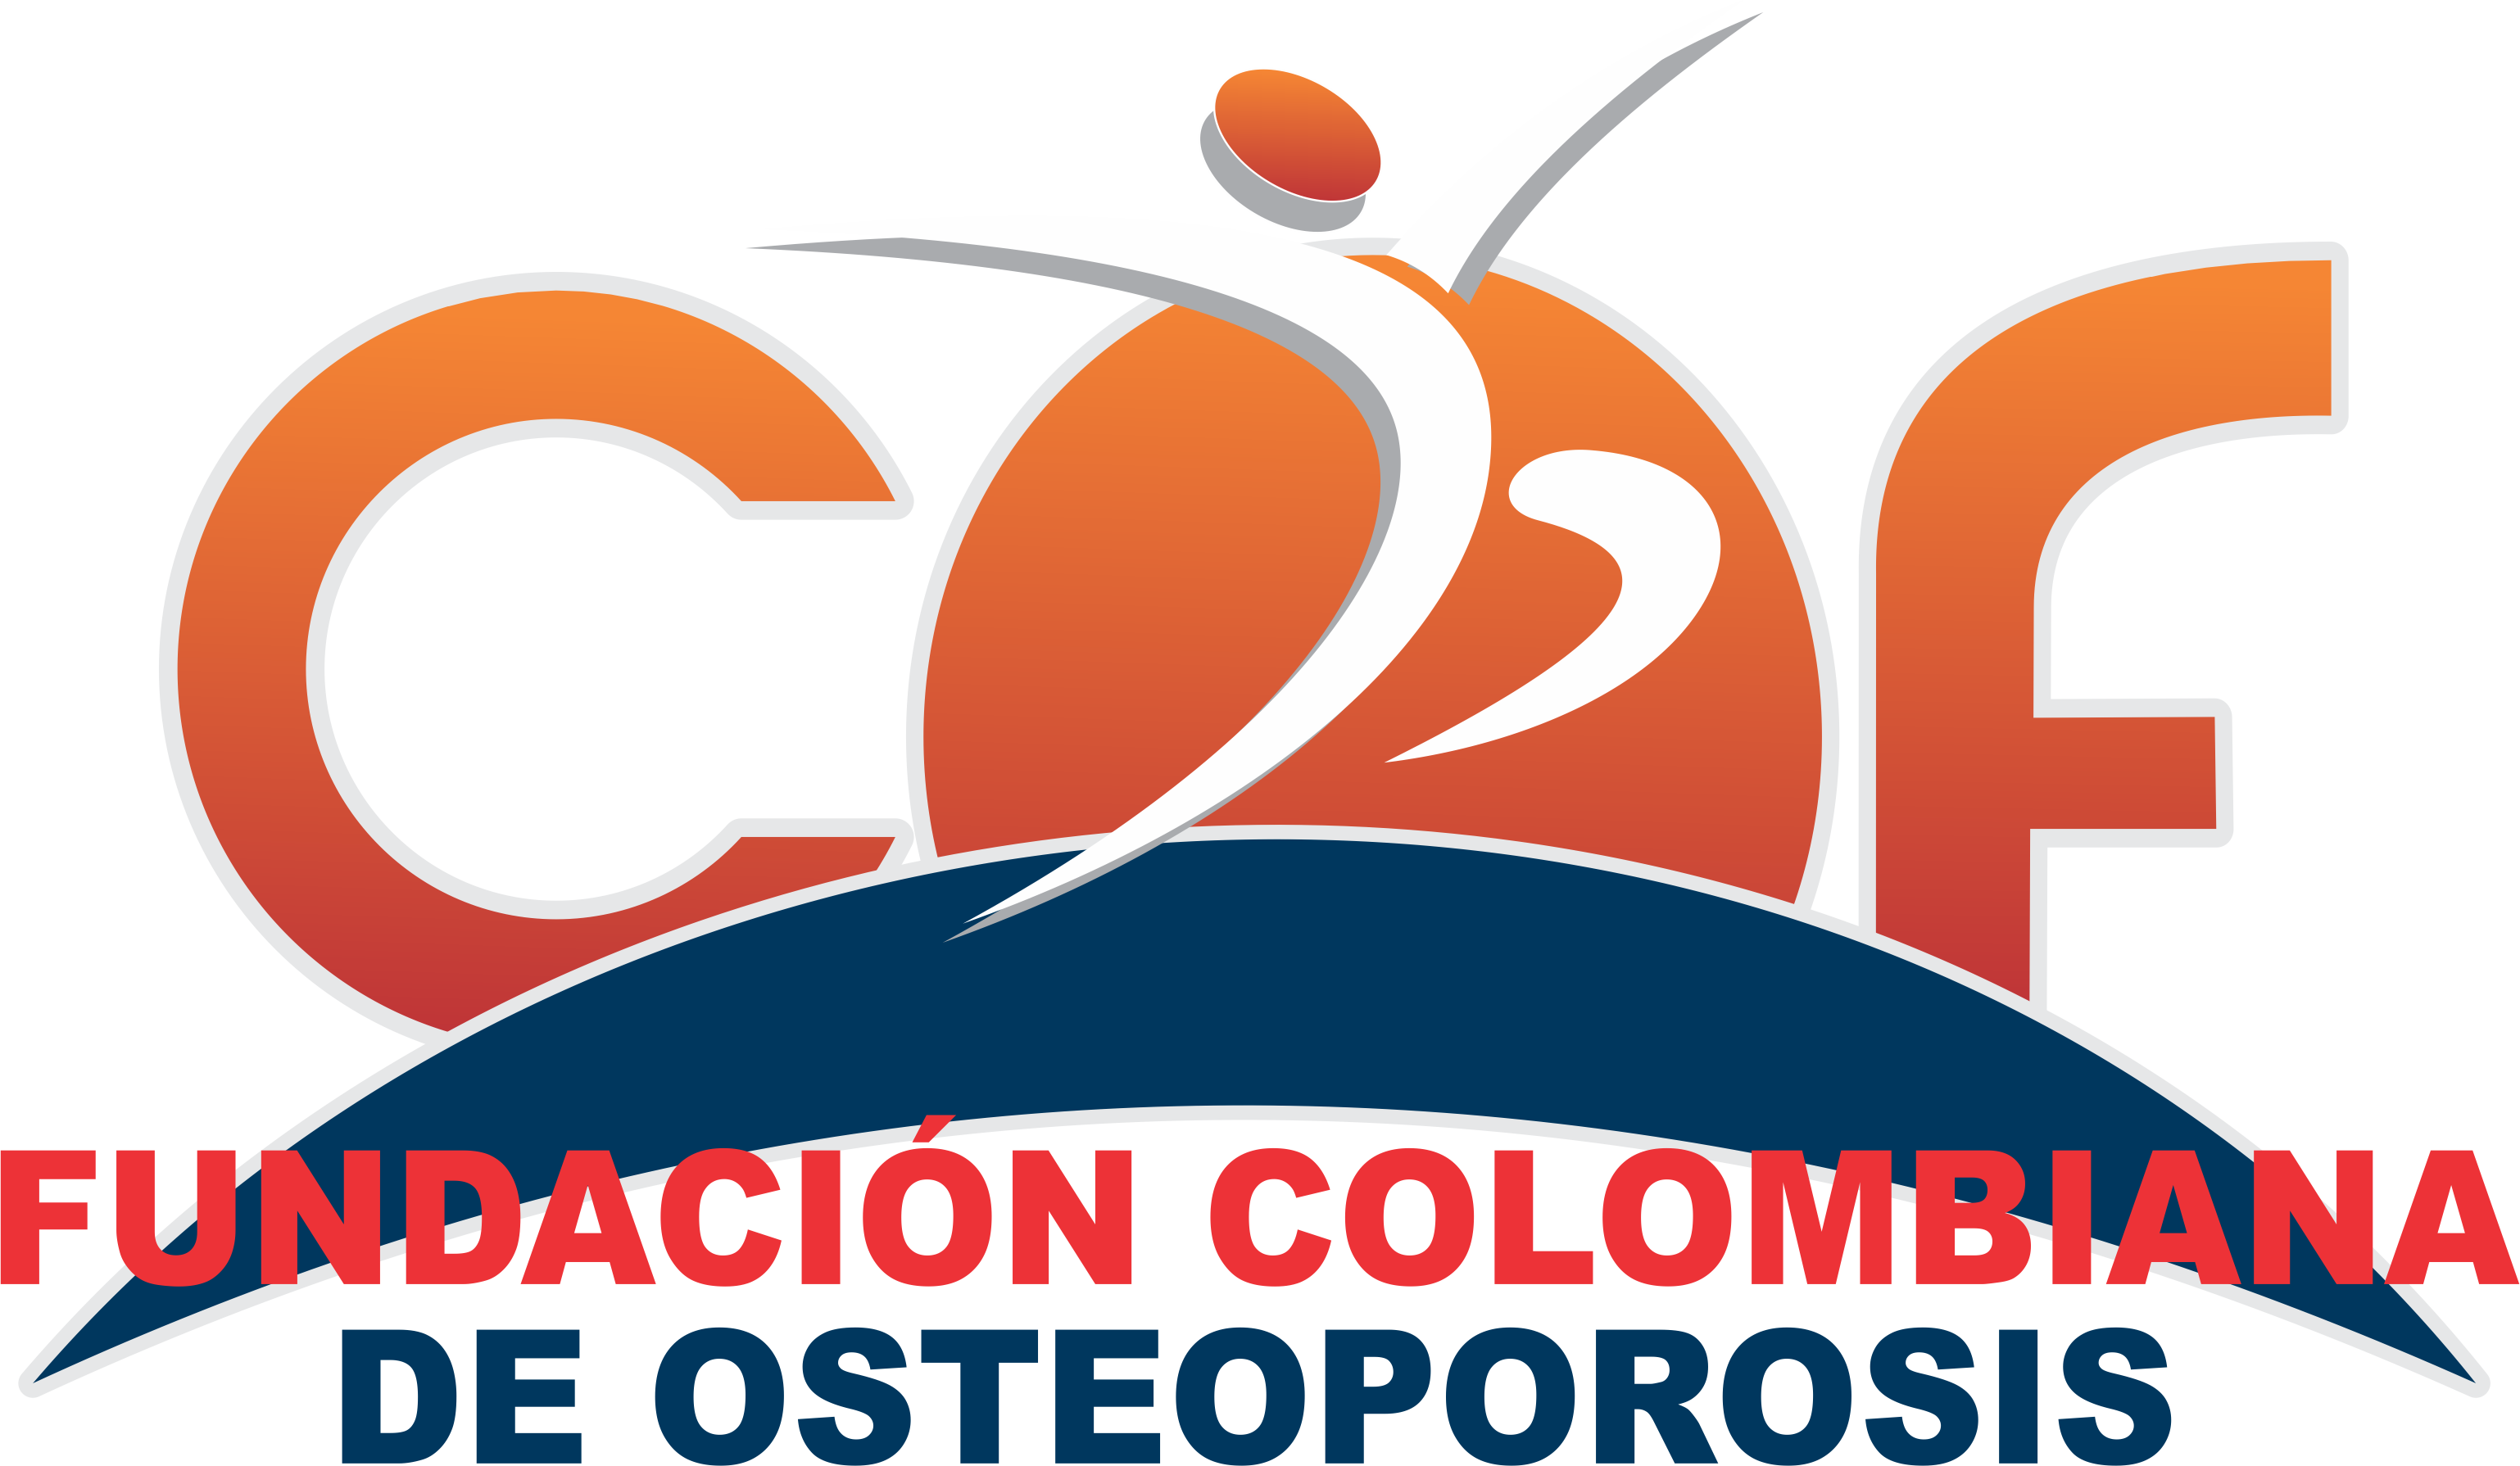 Organización voluntaria de salud más importante de Colombia, dedicada exclusivamente a la atención de la osteoporosis y la salud ósea.